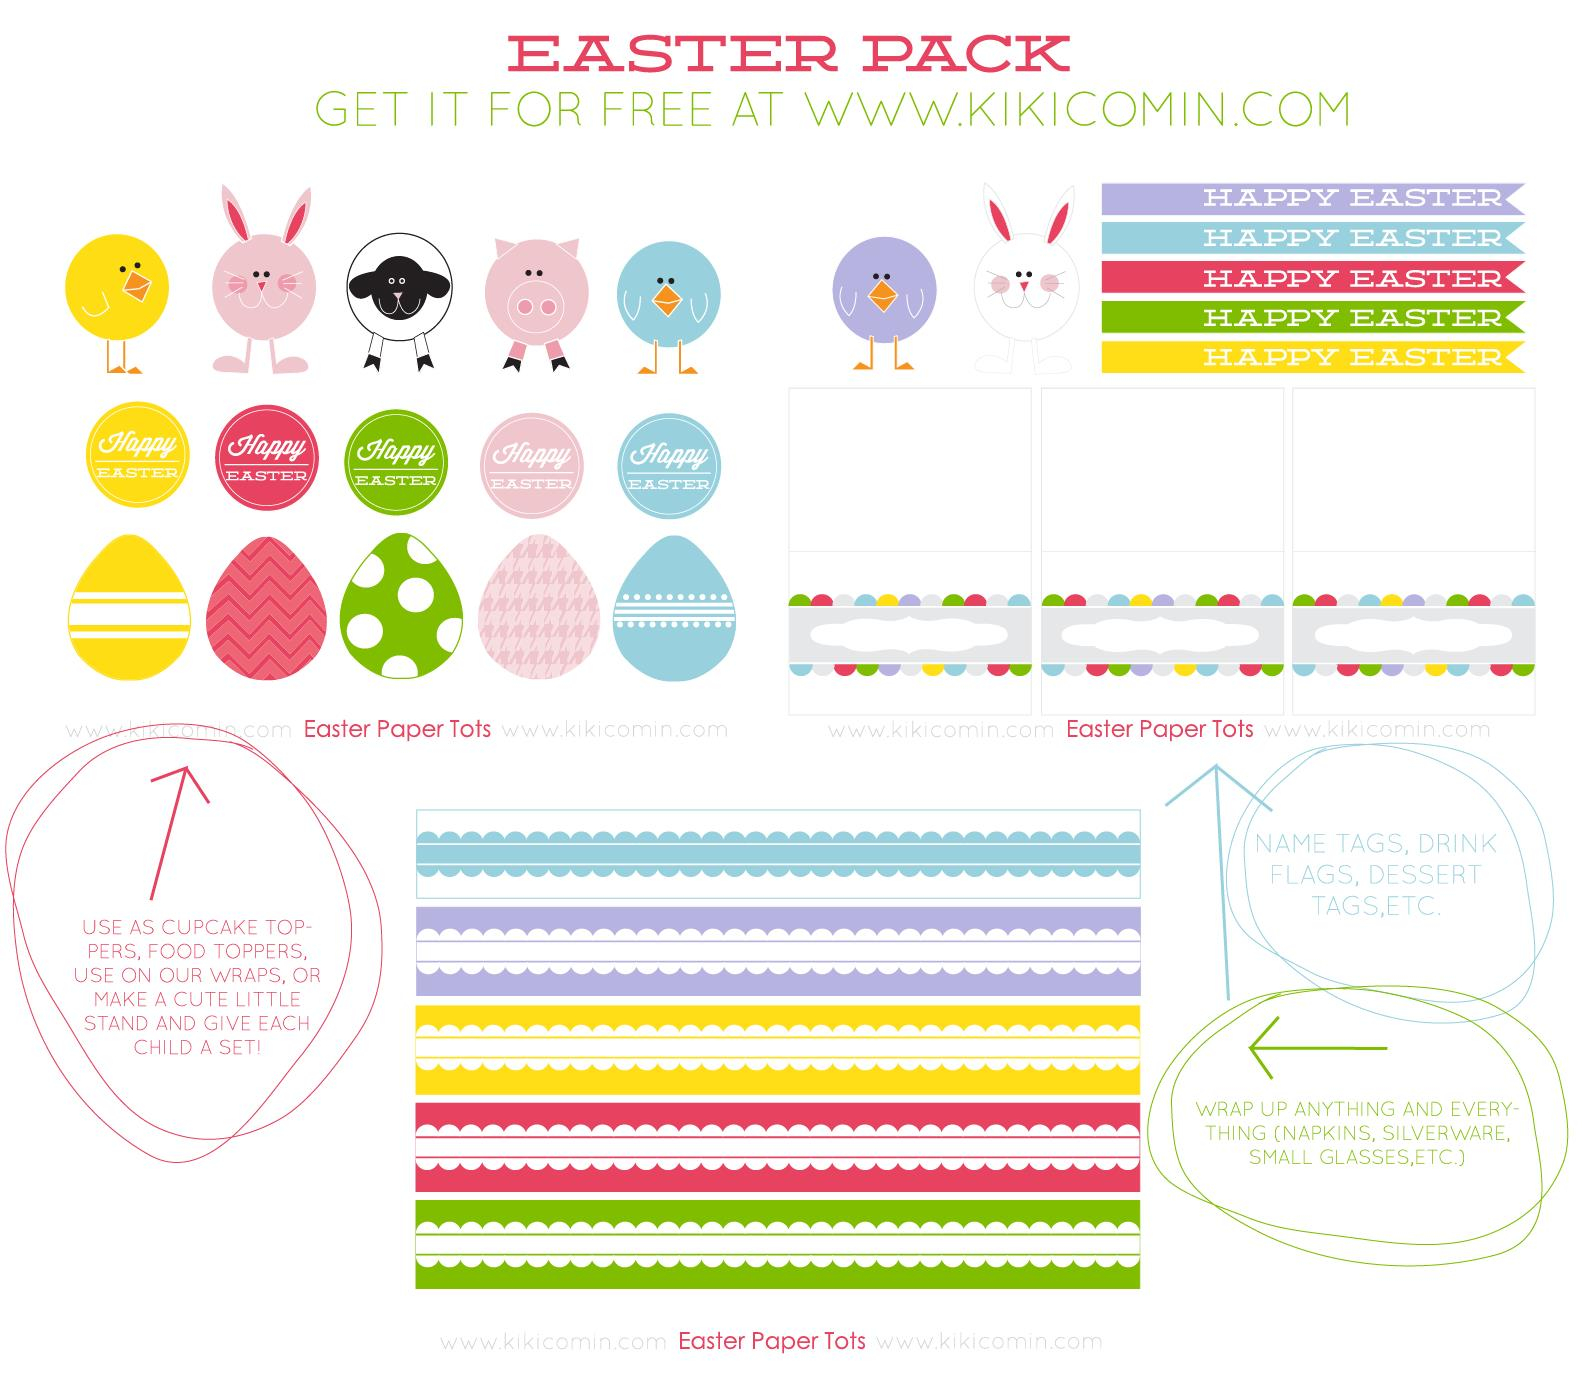 Free Printable Easter Basket Name Tags – Hd Easter Images - Free Easter Name Tags Printable